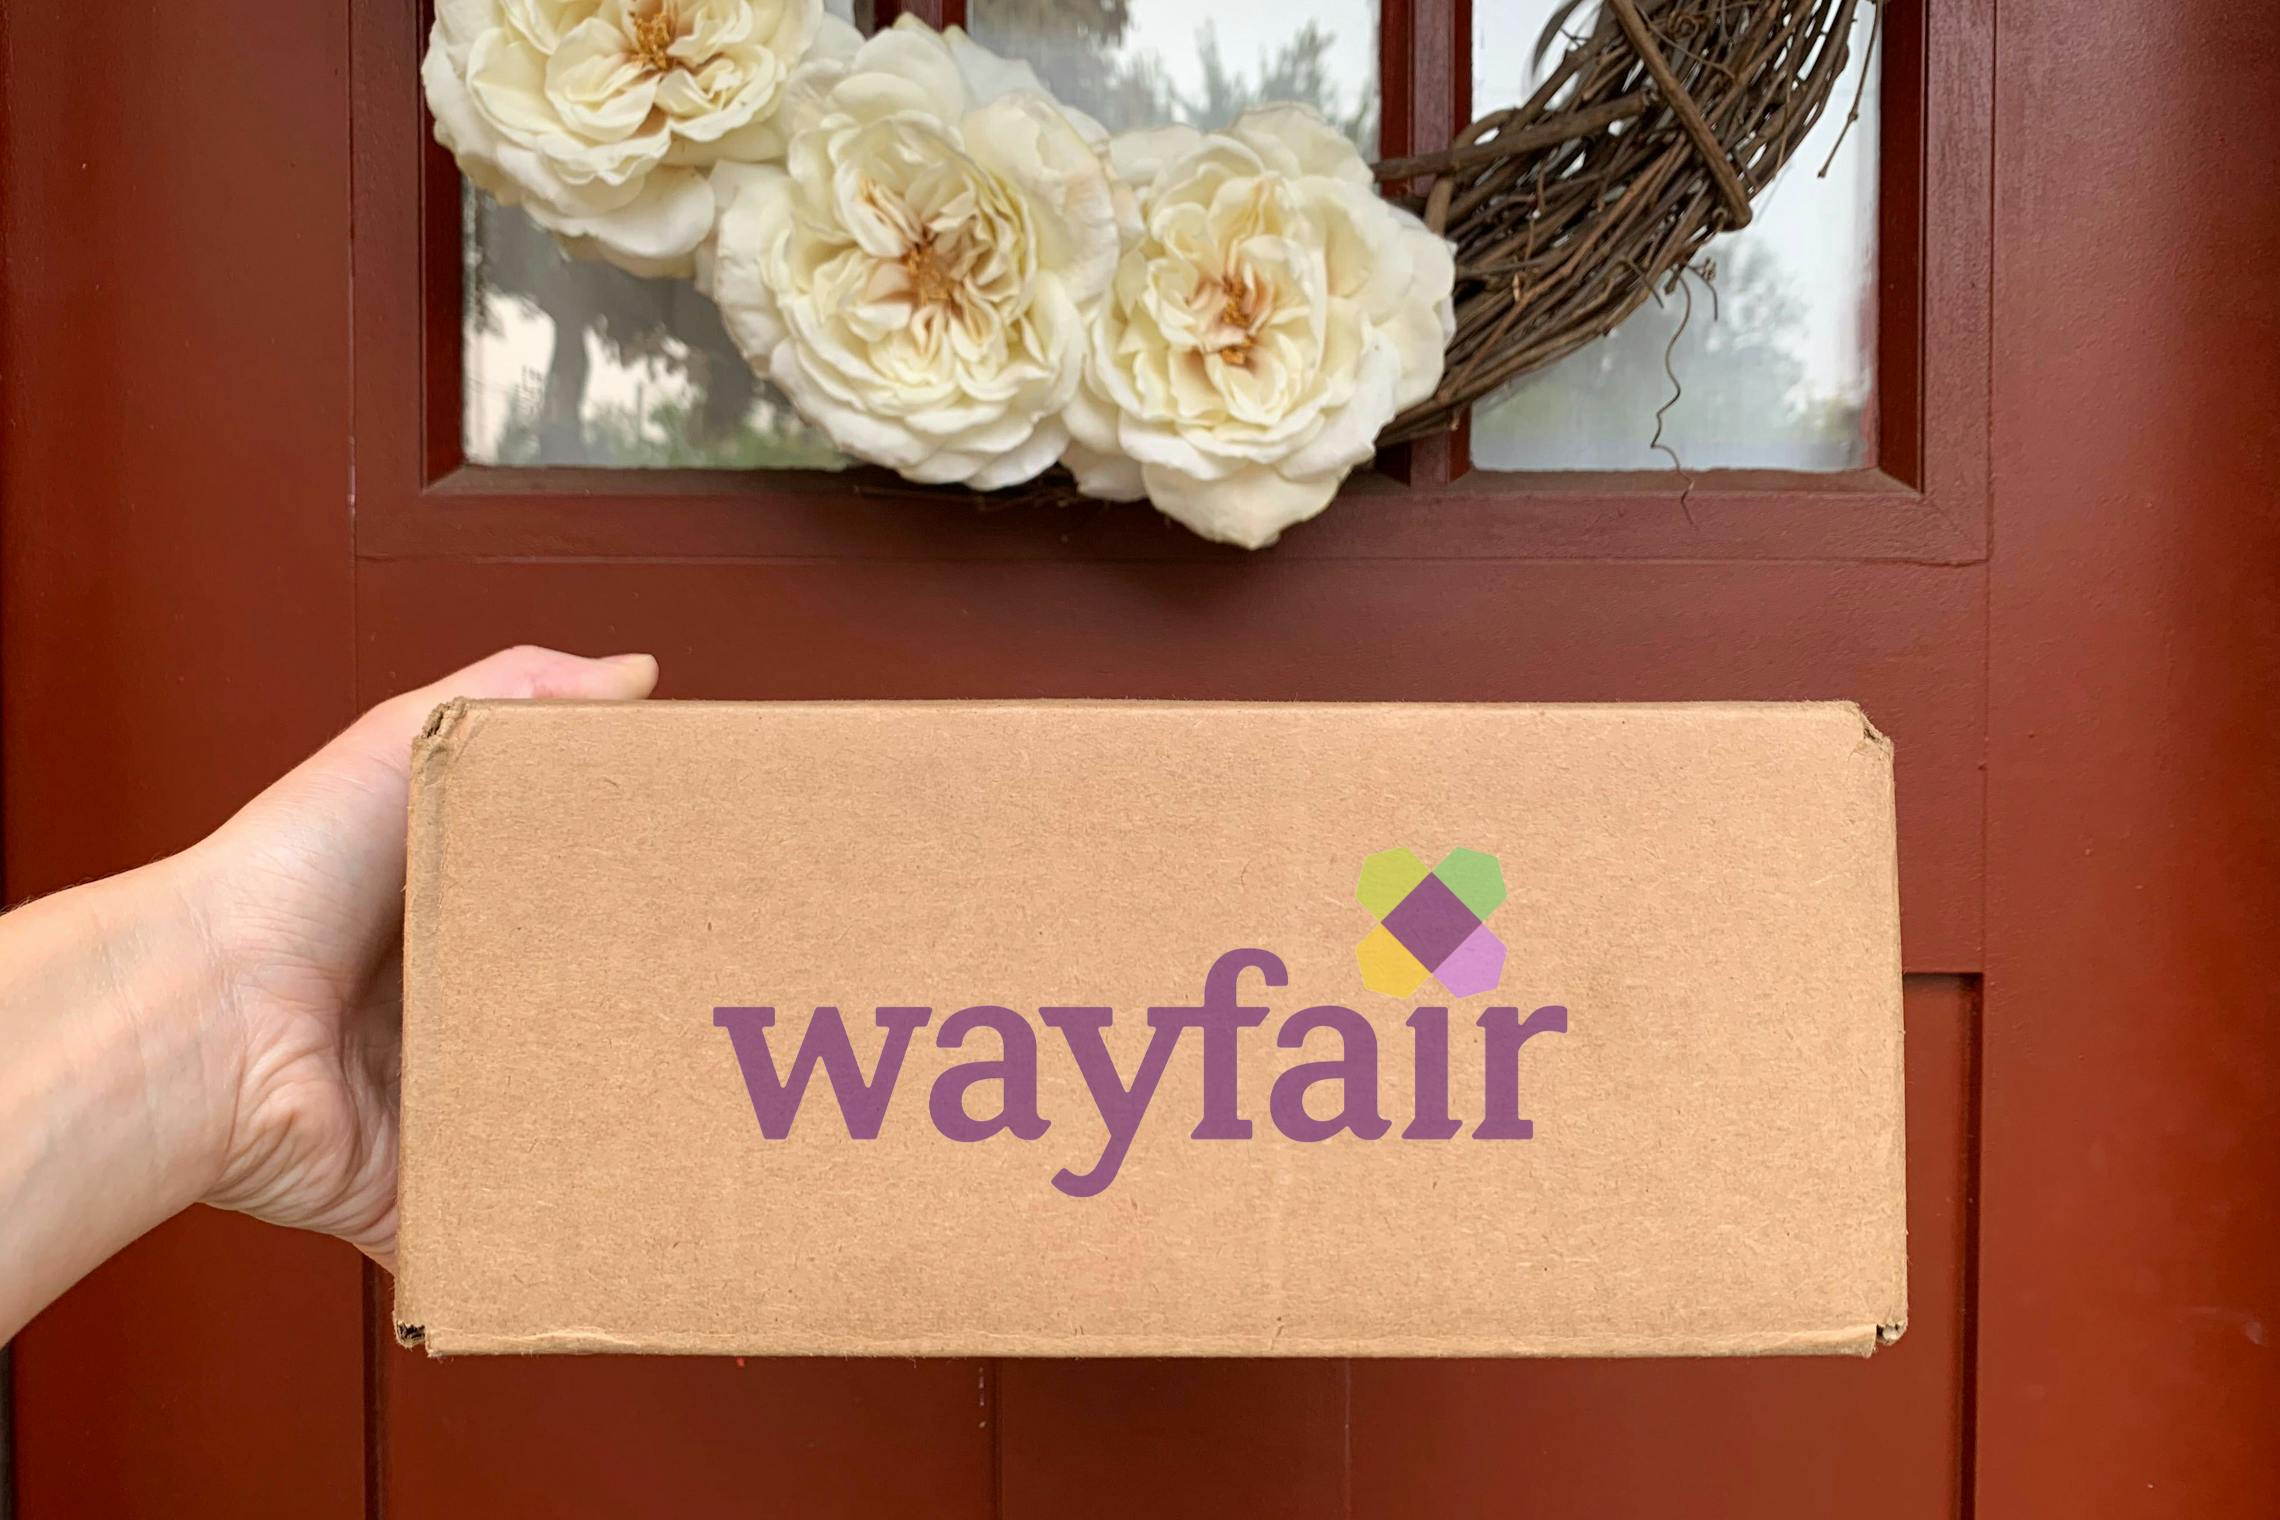 wayfair mattress in a box instructions